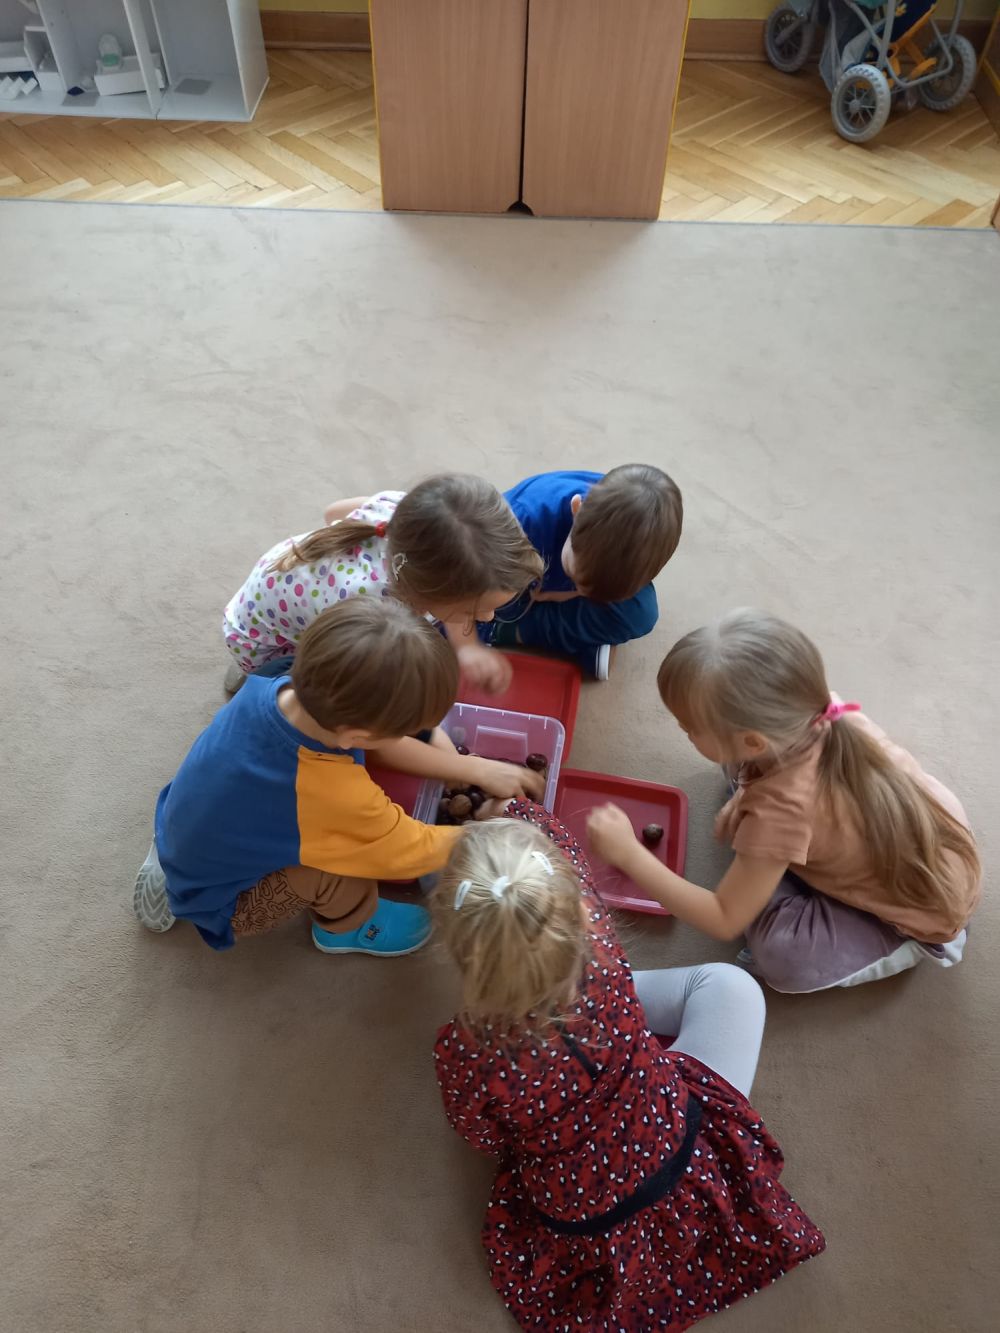 5 dzieci siedzą na dywanie i wyjmują z pojemnika kasztany i orzechy